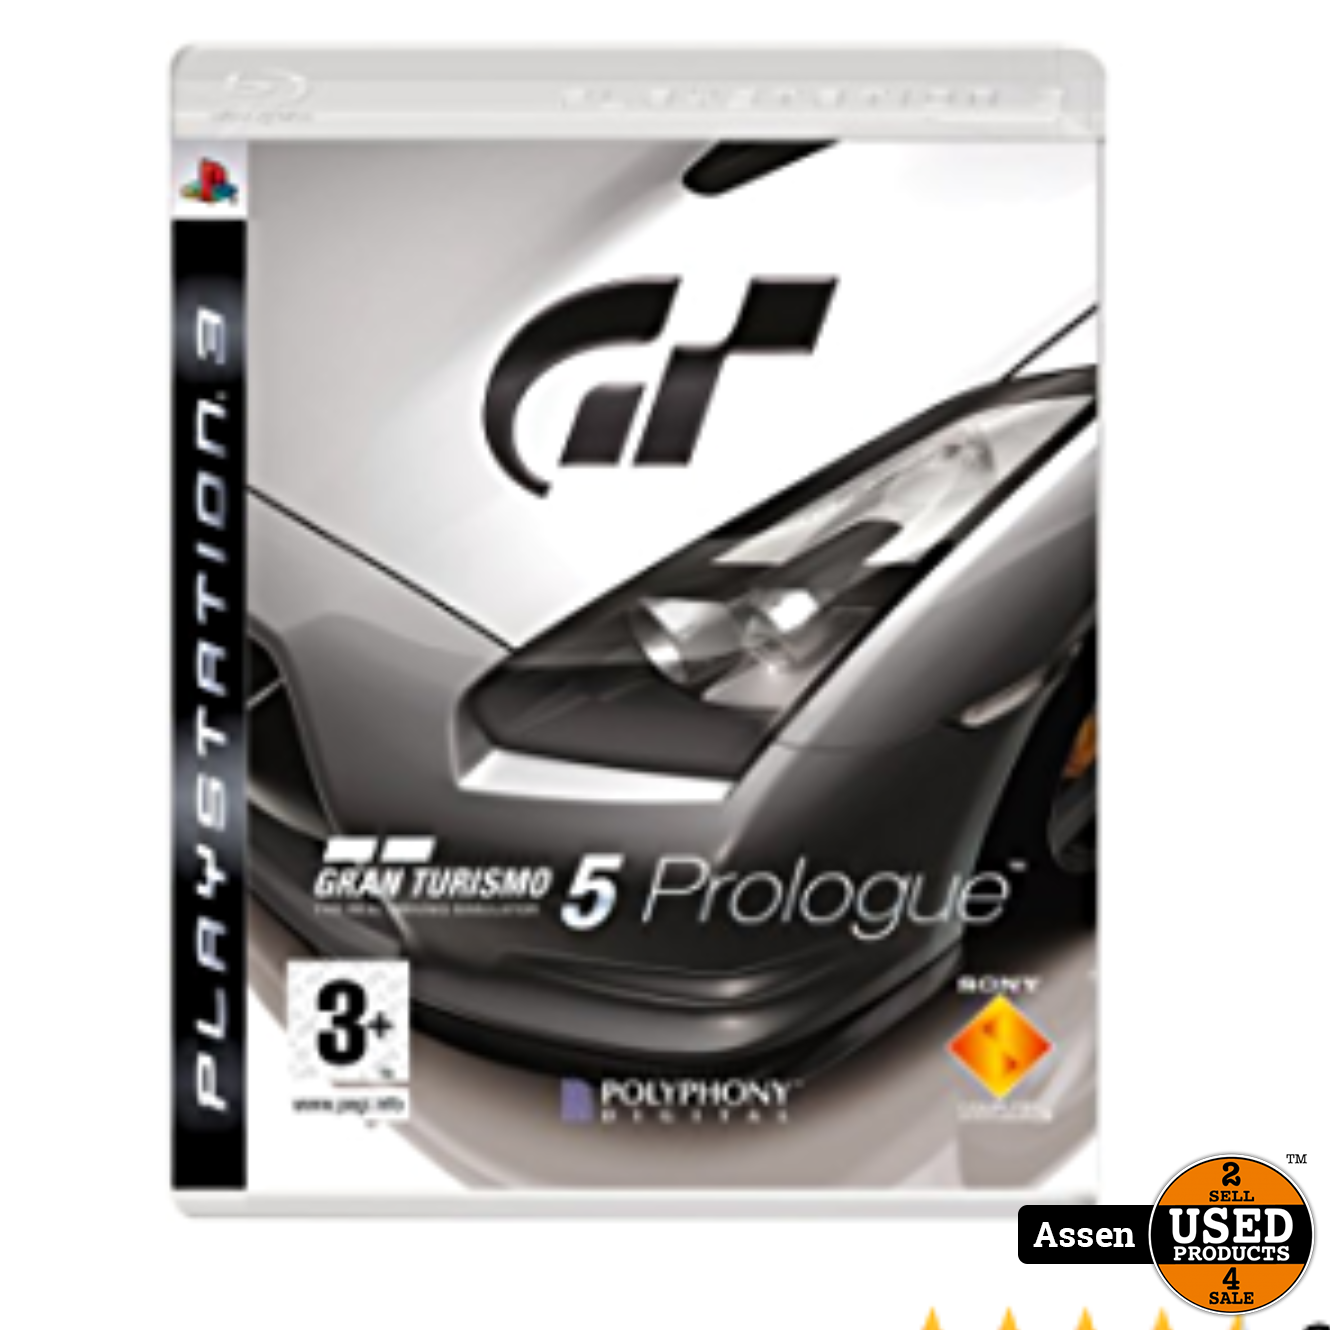 Aandringen inkt keuken PS3 game || Gran Turismo 5 Prologue - Used Products Assen